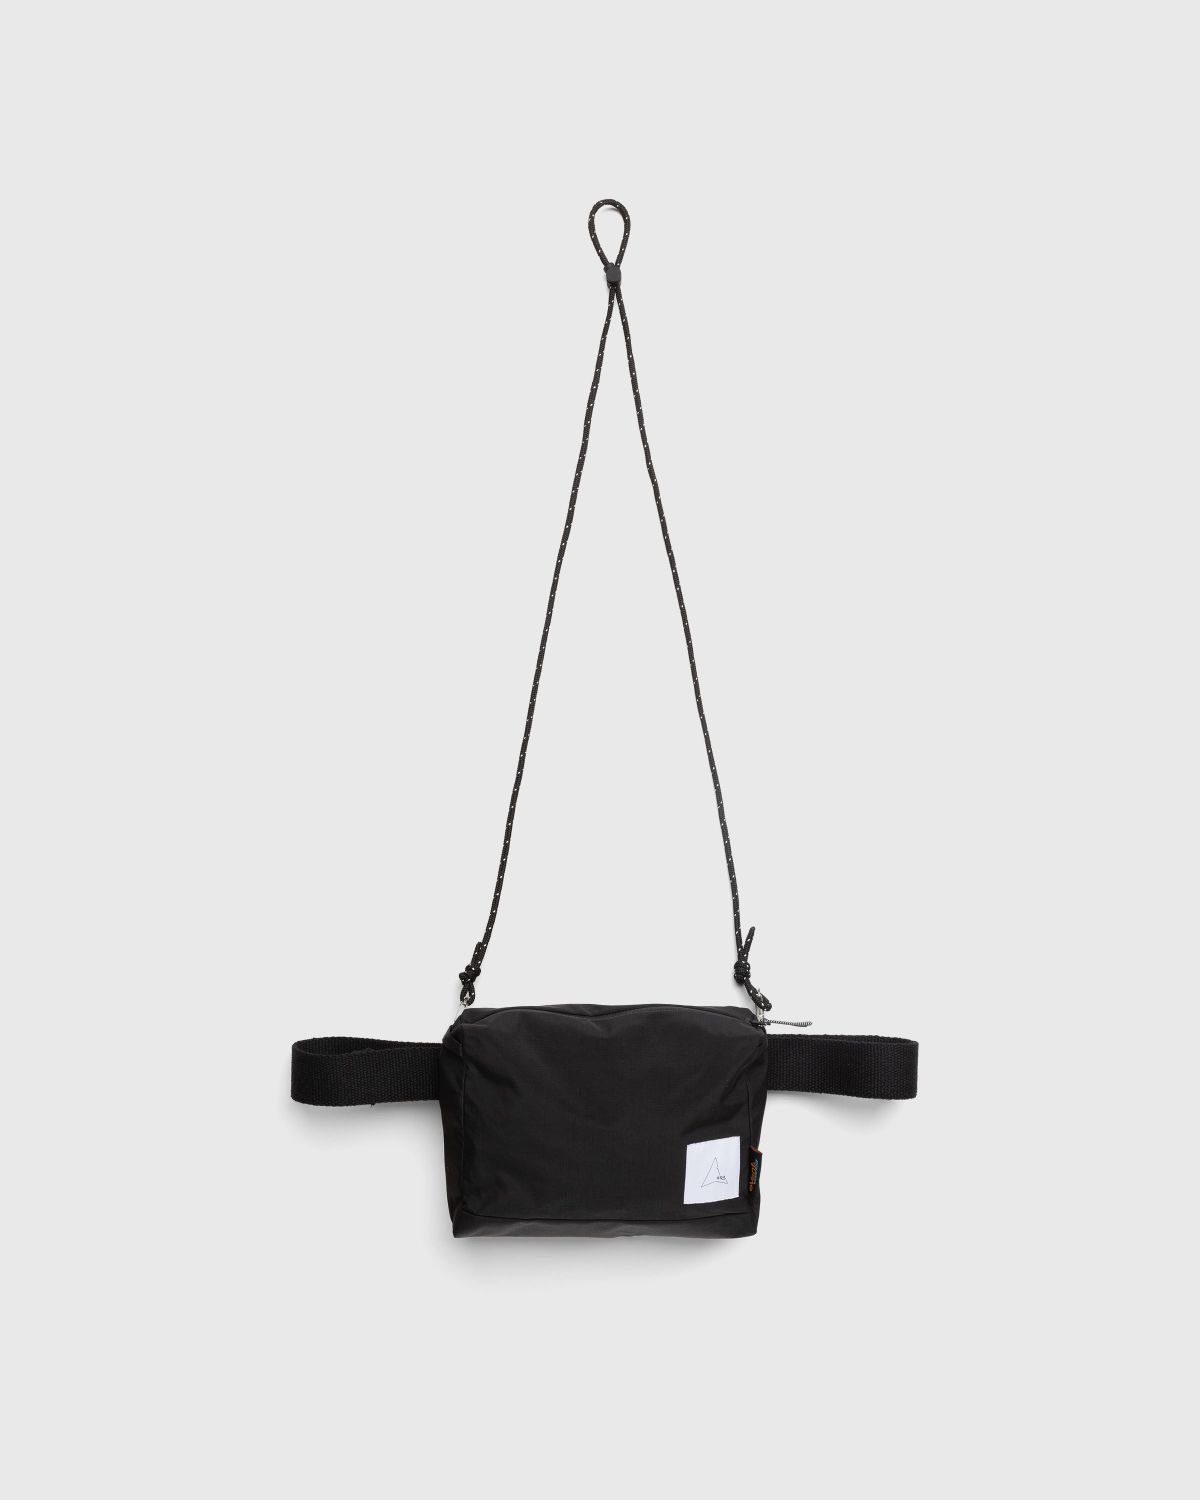 Waterproof Crossbody Bag Black - Waistbags - Black - Image 1